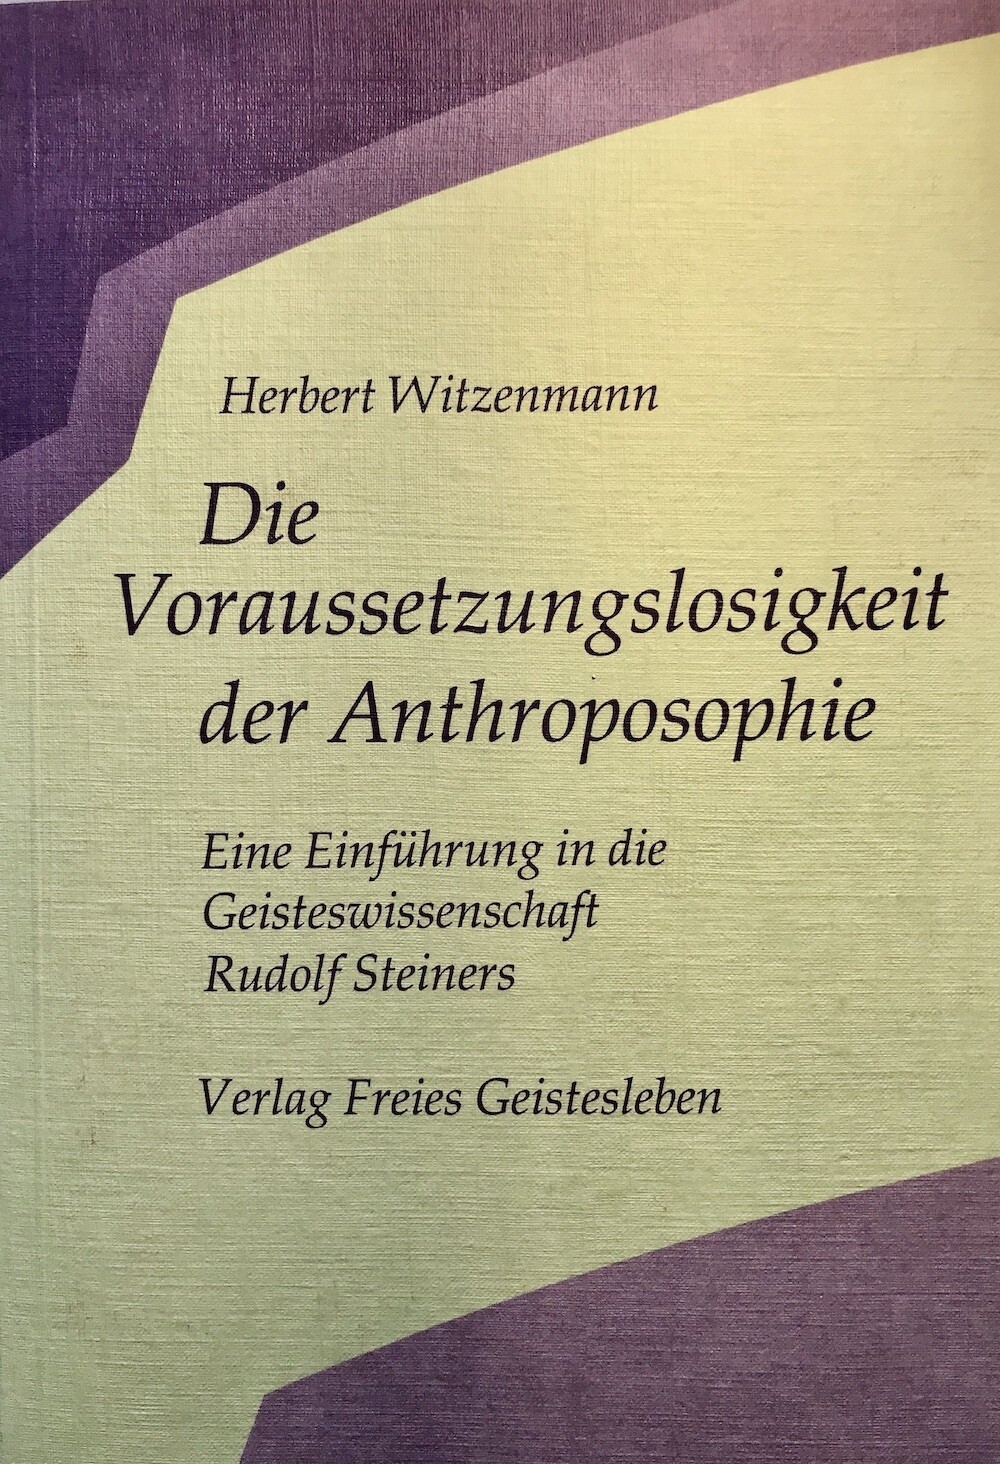 Herbert Witzenmann: Die Voraussetzungslosigkeit der Anthroposophie (1986)